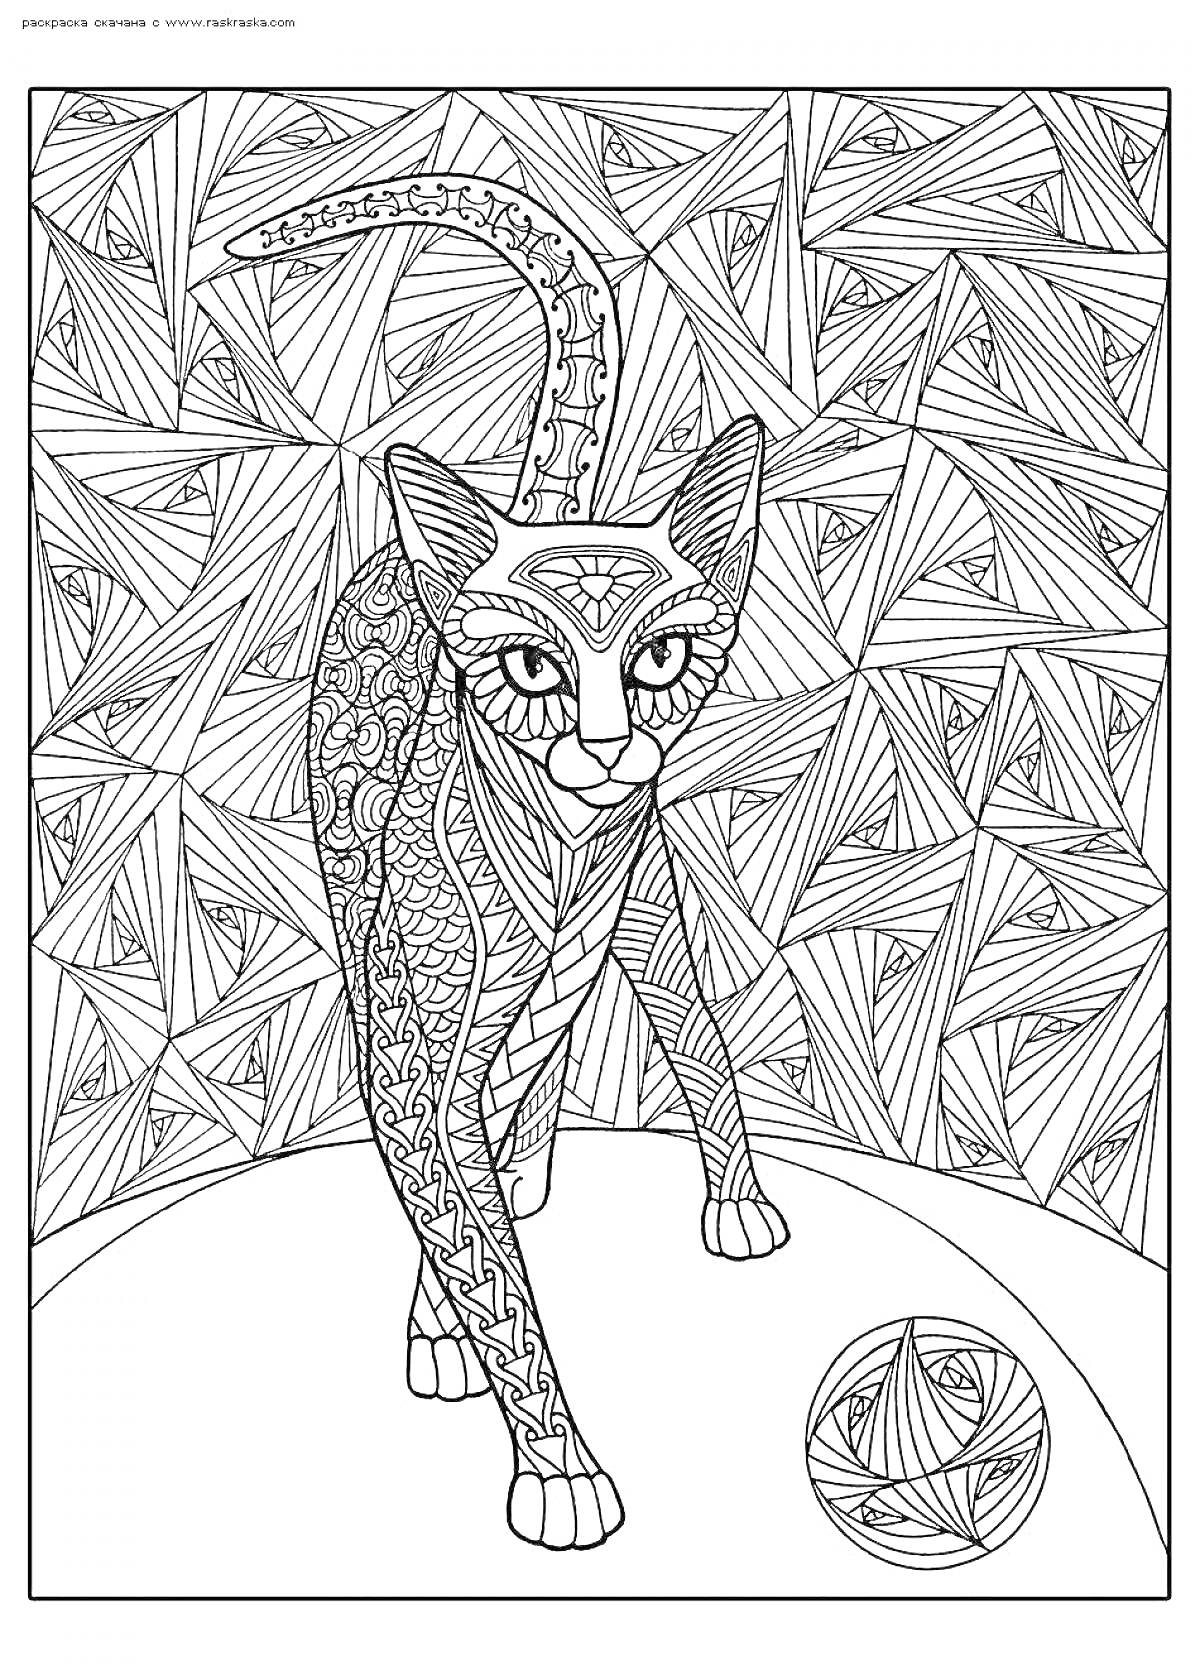 Раскраска Арт кот с узорами на теле и хвосте, геометрический фон, шар с узорами